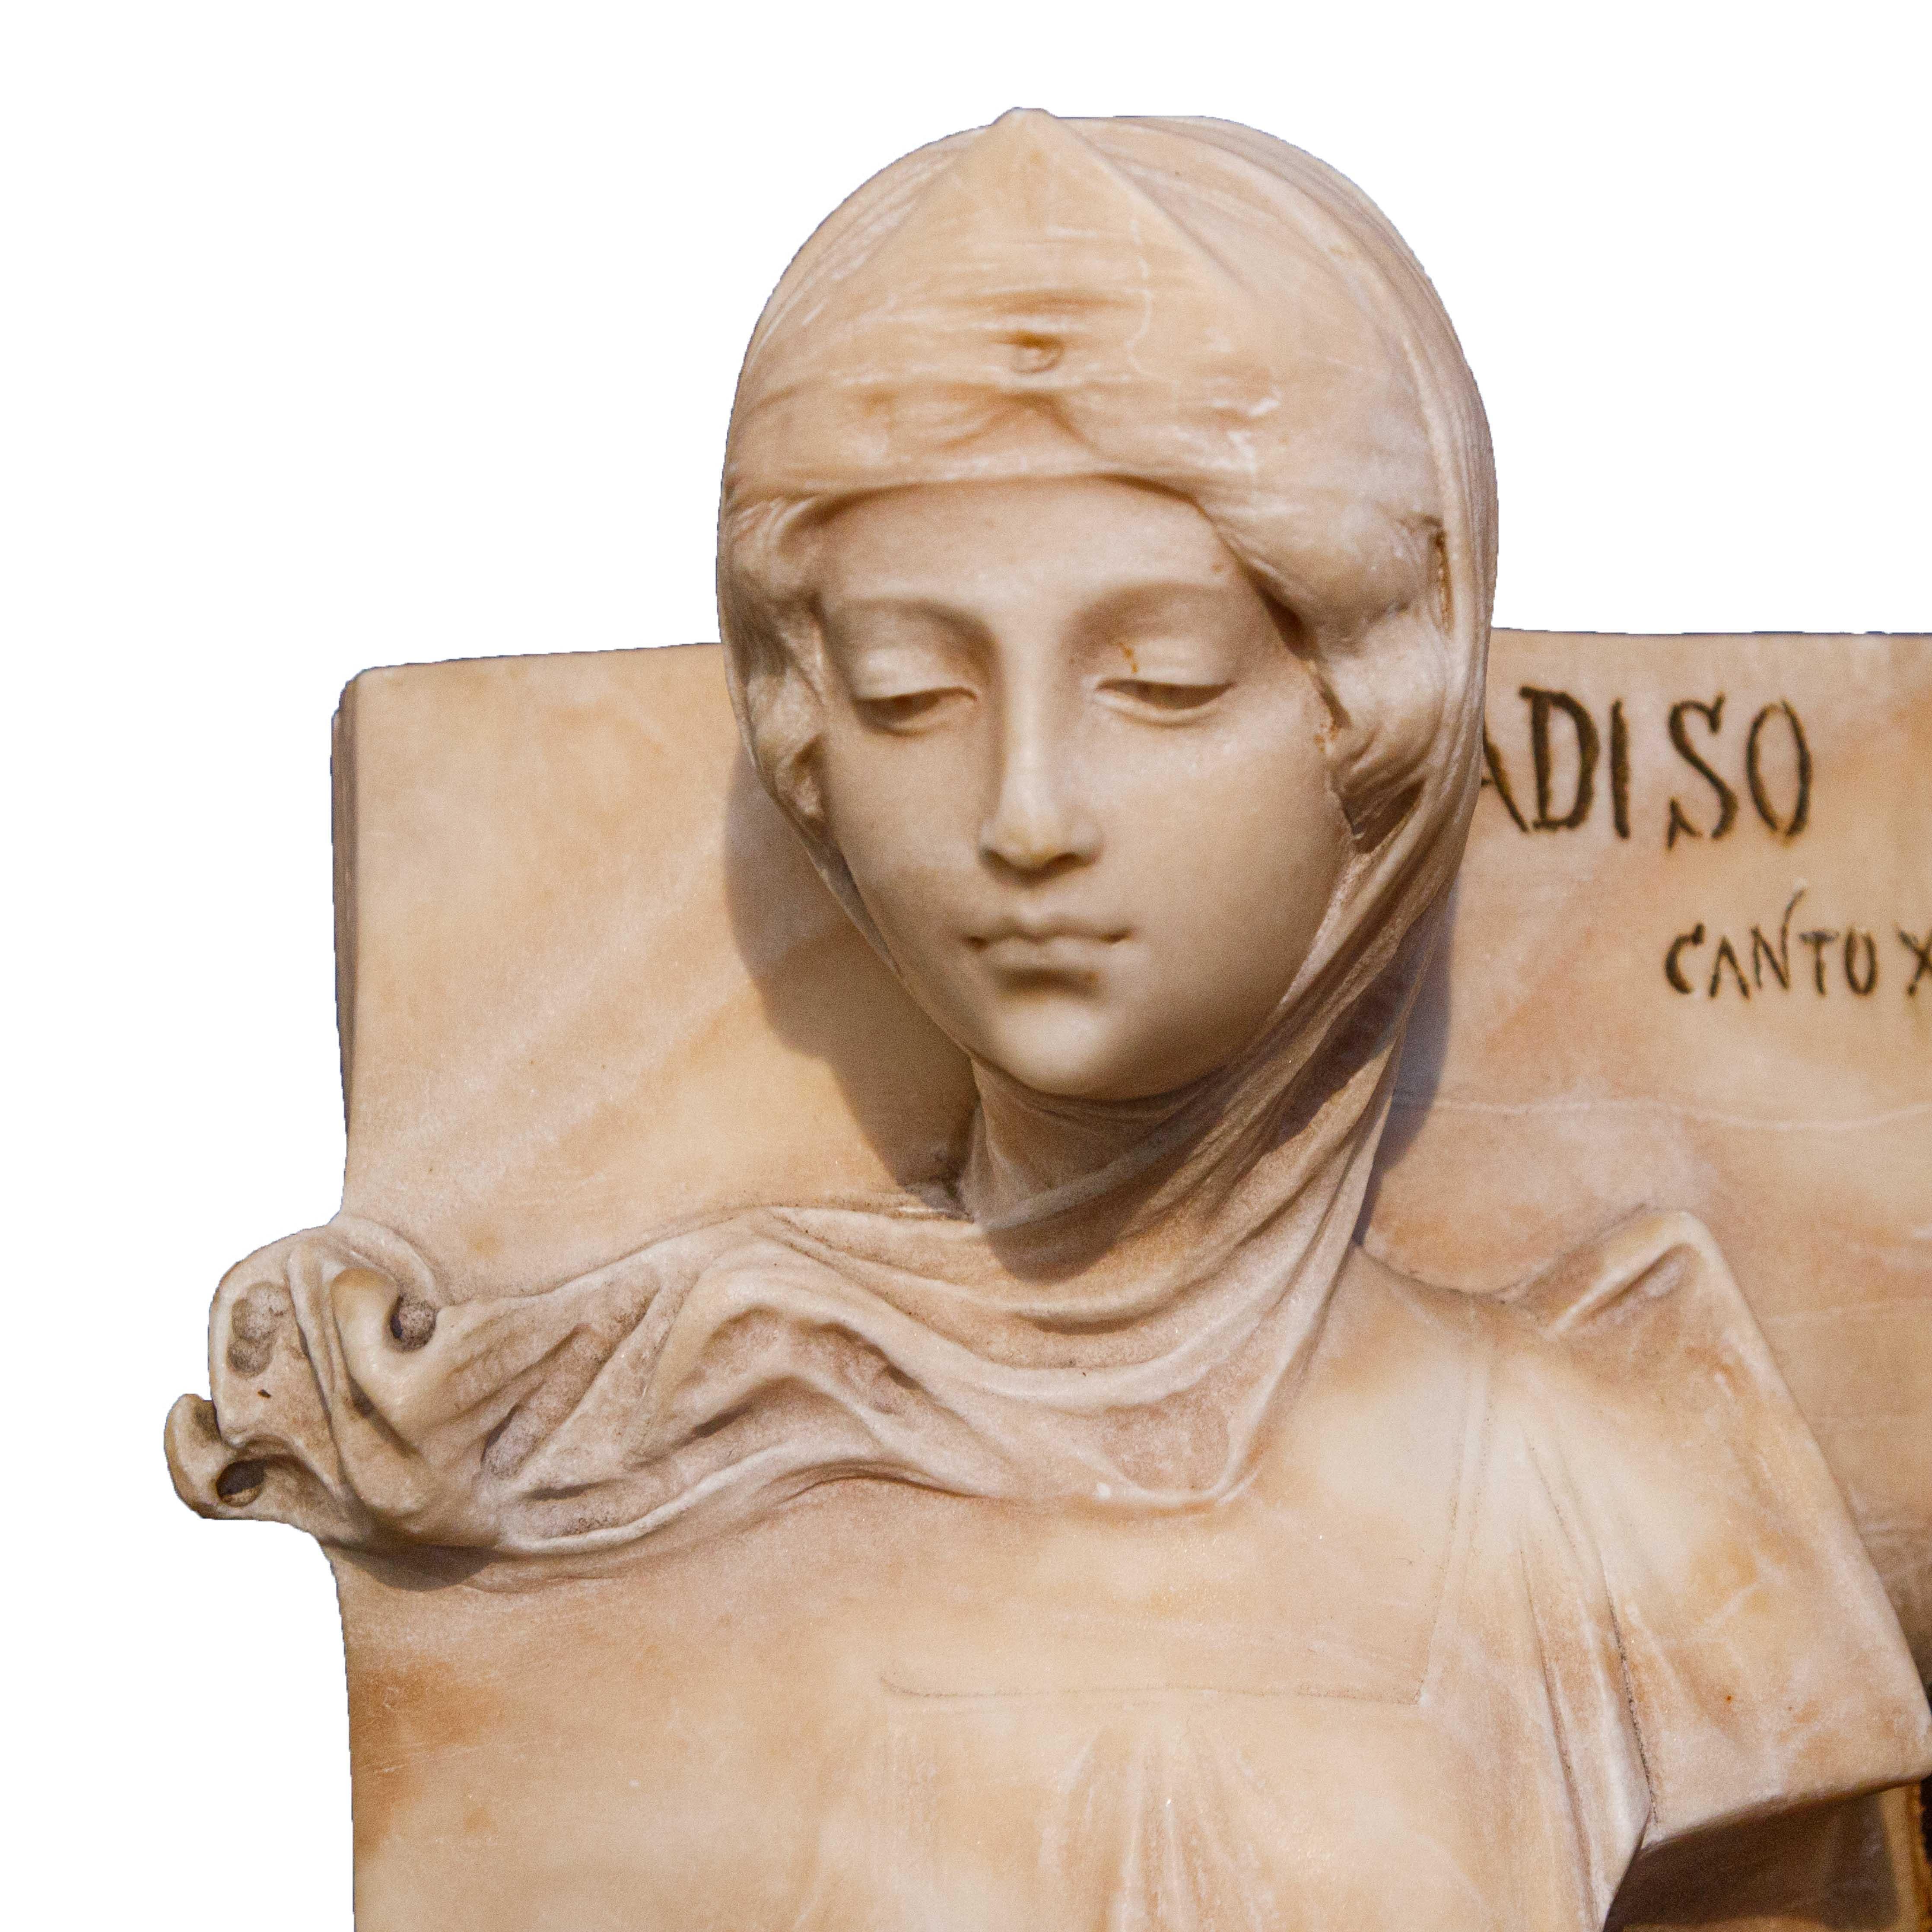 Dante et Béatrice

Albâtre, 33 x 20 x 36 cm

Début du 20e siècle


Sur les deux faces du livre, un buste en saillie de Dante Alighieri, dans une pose de profil typique de l'Antiquité, regarde avec admiration sa bien-aimée Béatrice sculptée sur la